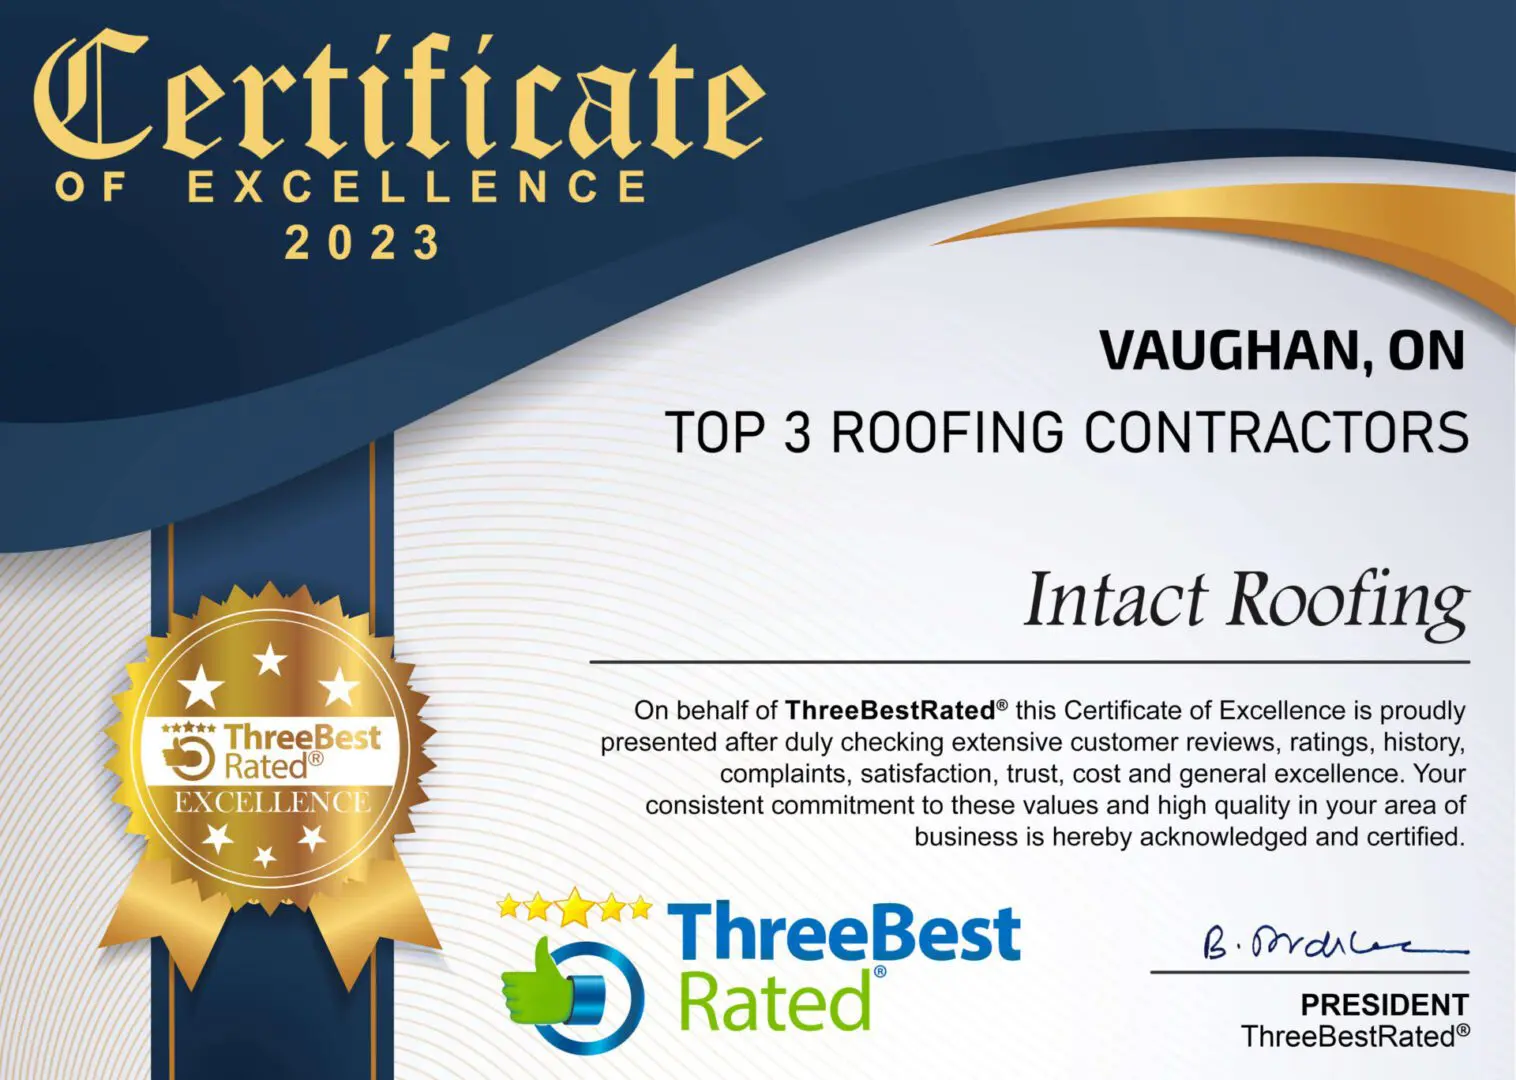 Intact roofing top roofing contractors in Vaughan